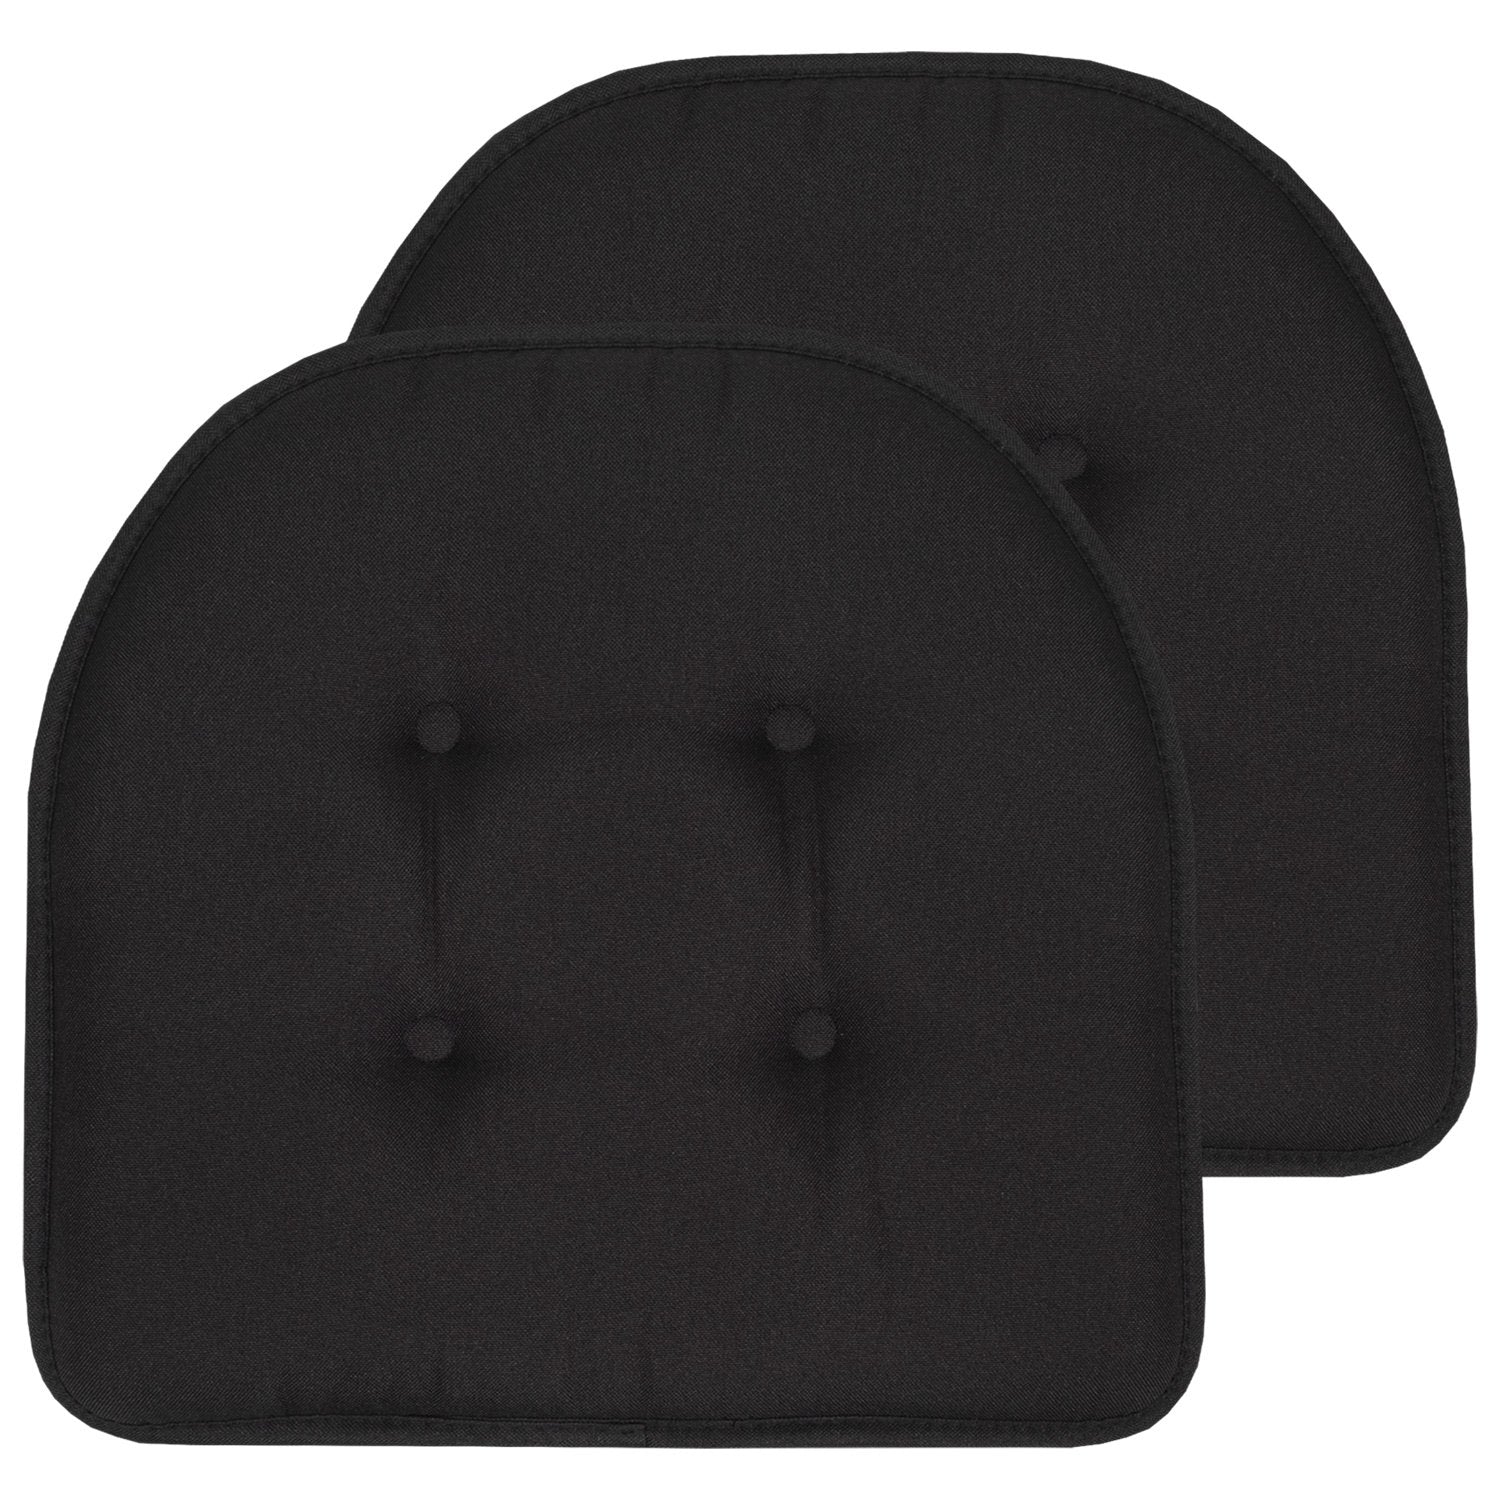 U-Shape Chair Cushion Set Black 2-Pack